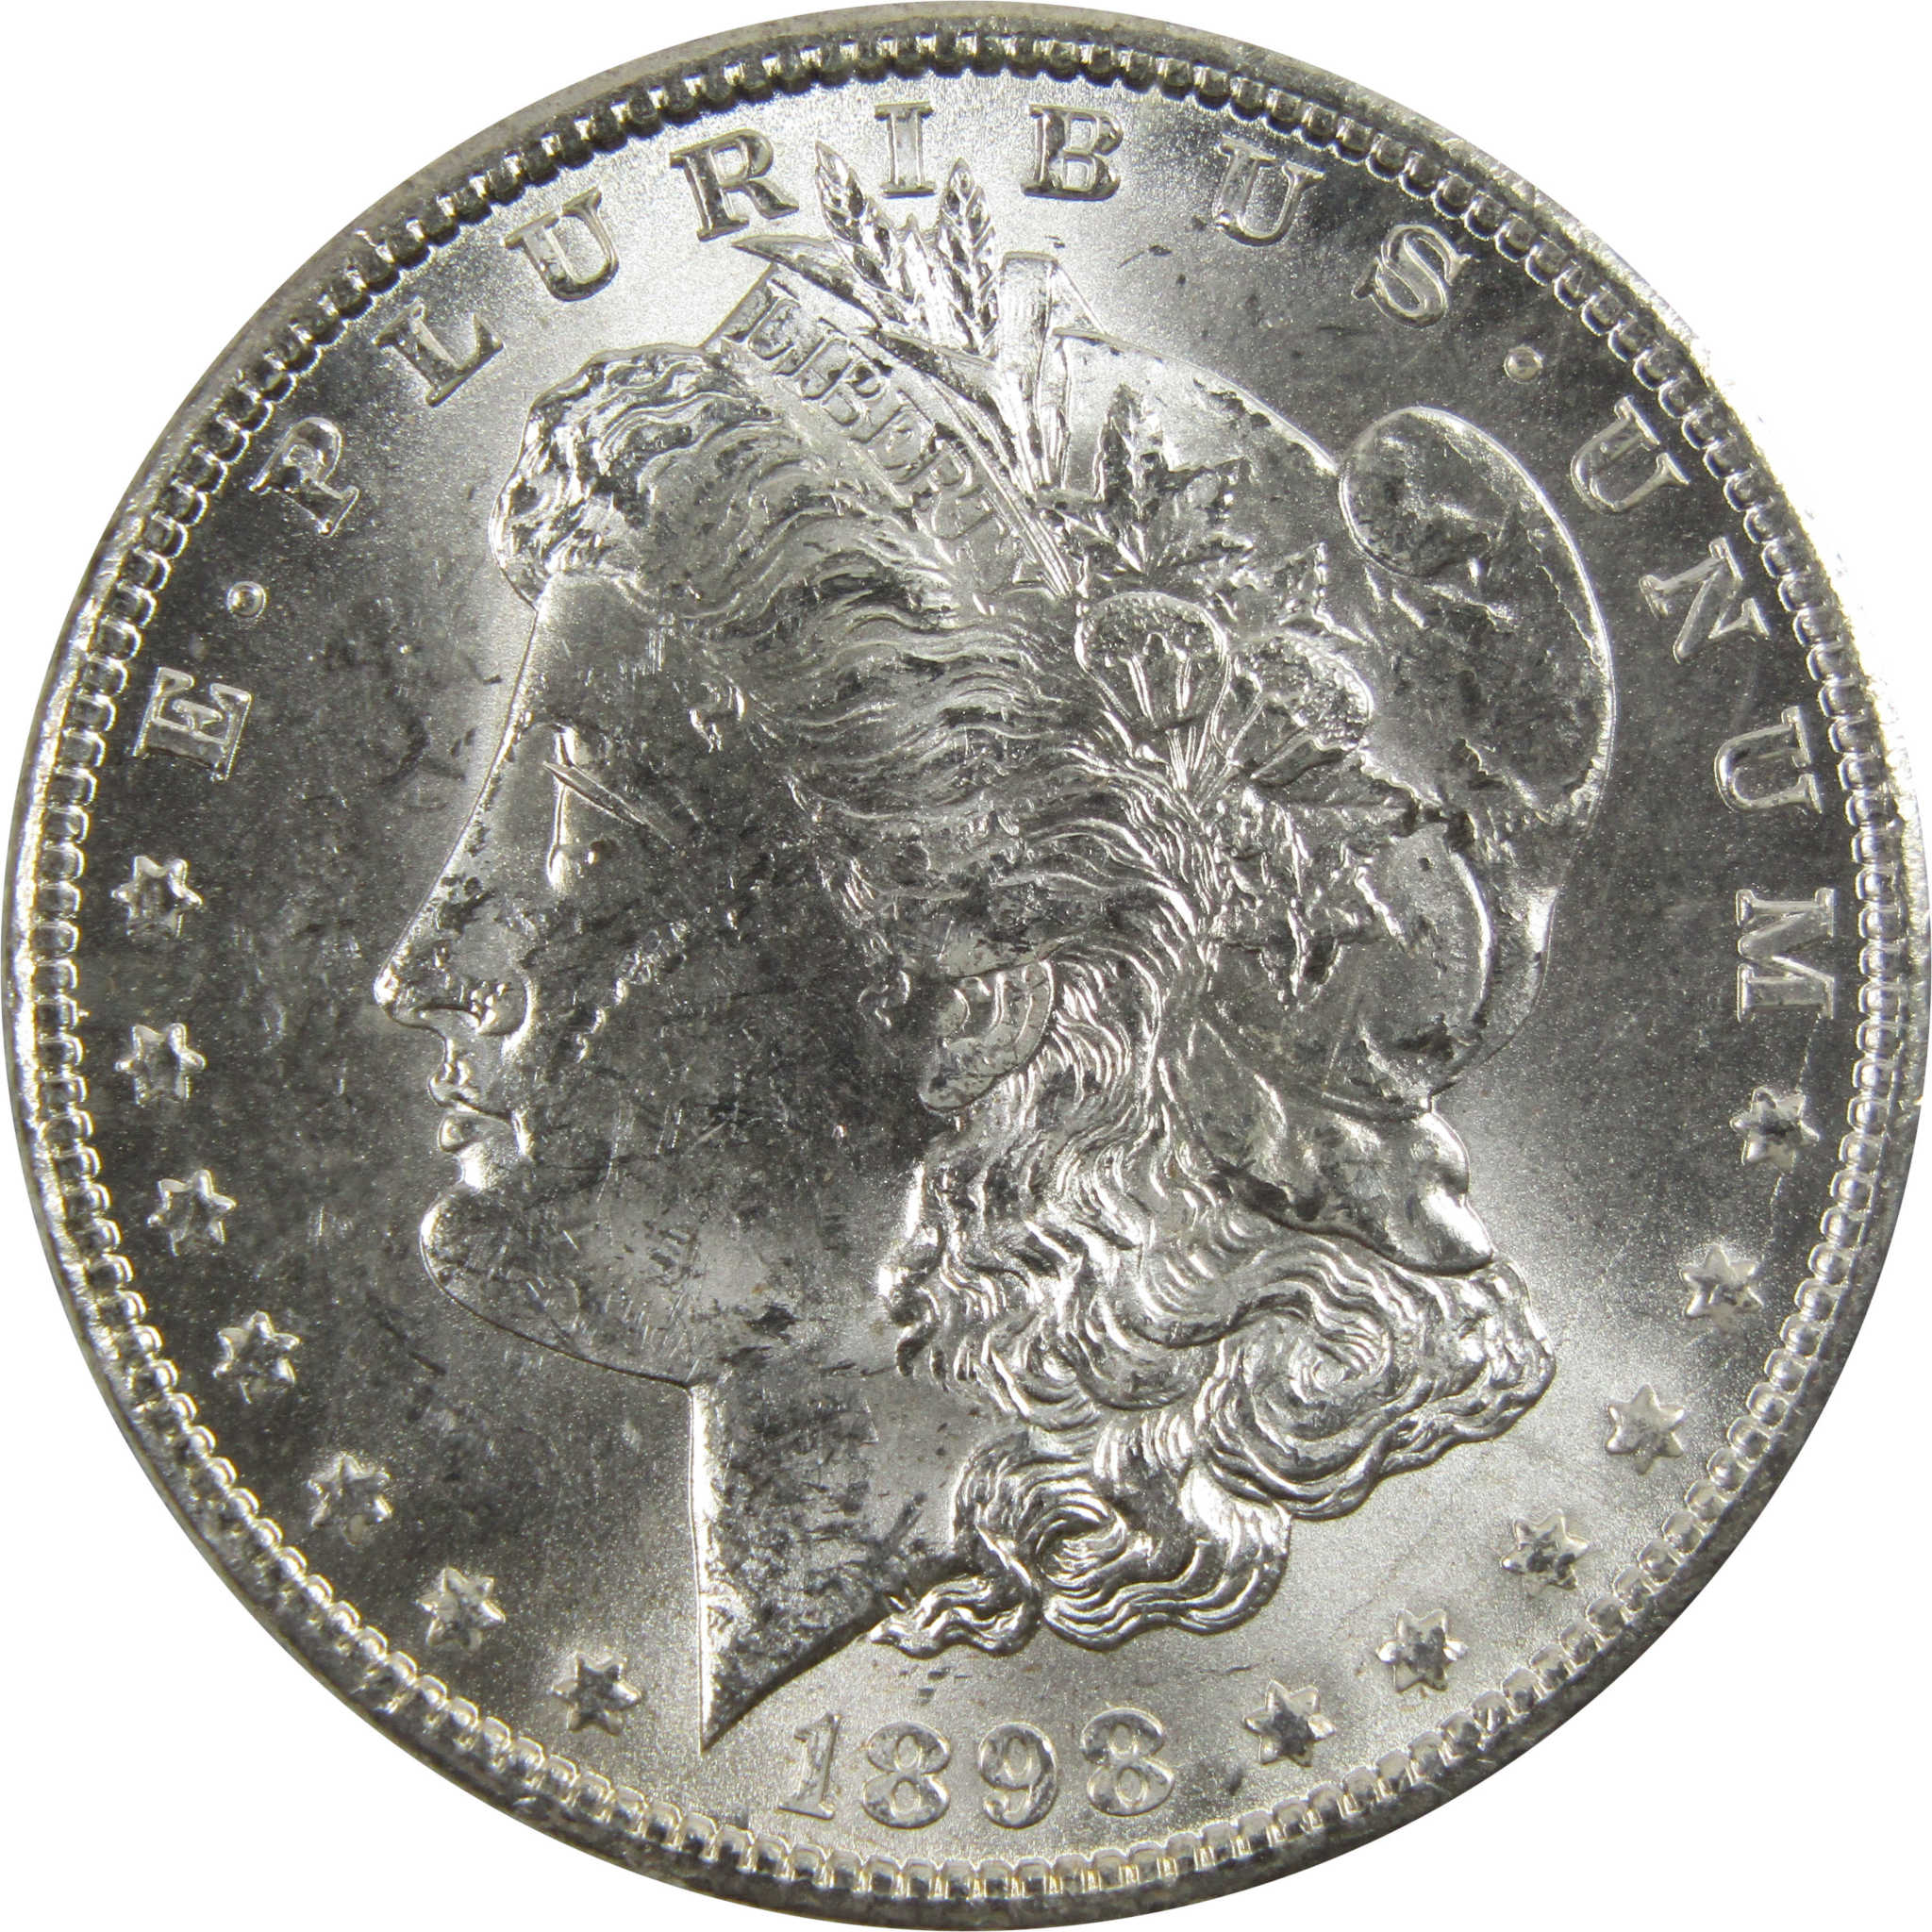 1898 O Morgan Dollar BU Uncirculated 90% Silver $1 Coin SKU:I5286 - Morgan coin - Morgan silver dollar - Morgan silver dollar for sale - Profile Coins &amp; Collectibles